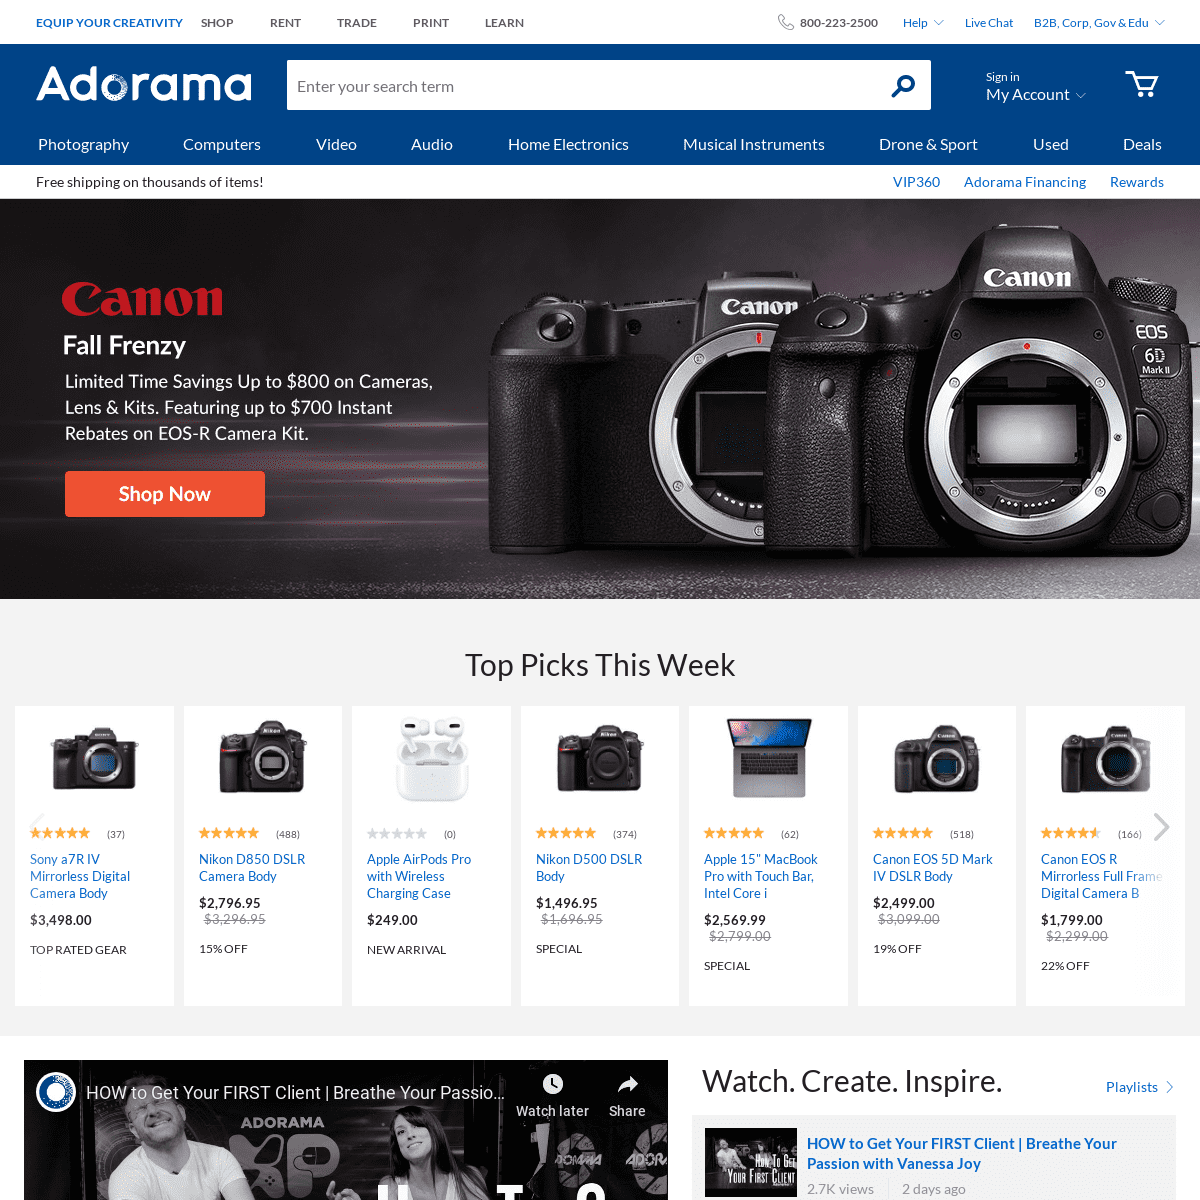 A complete backup of adorama.com